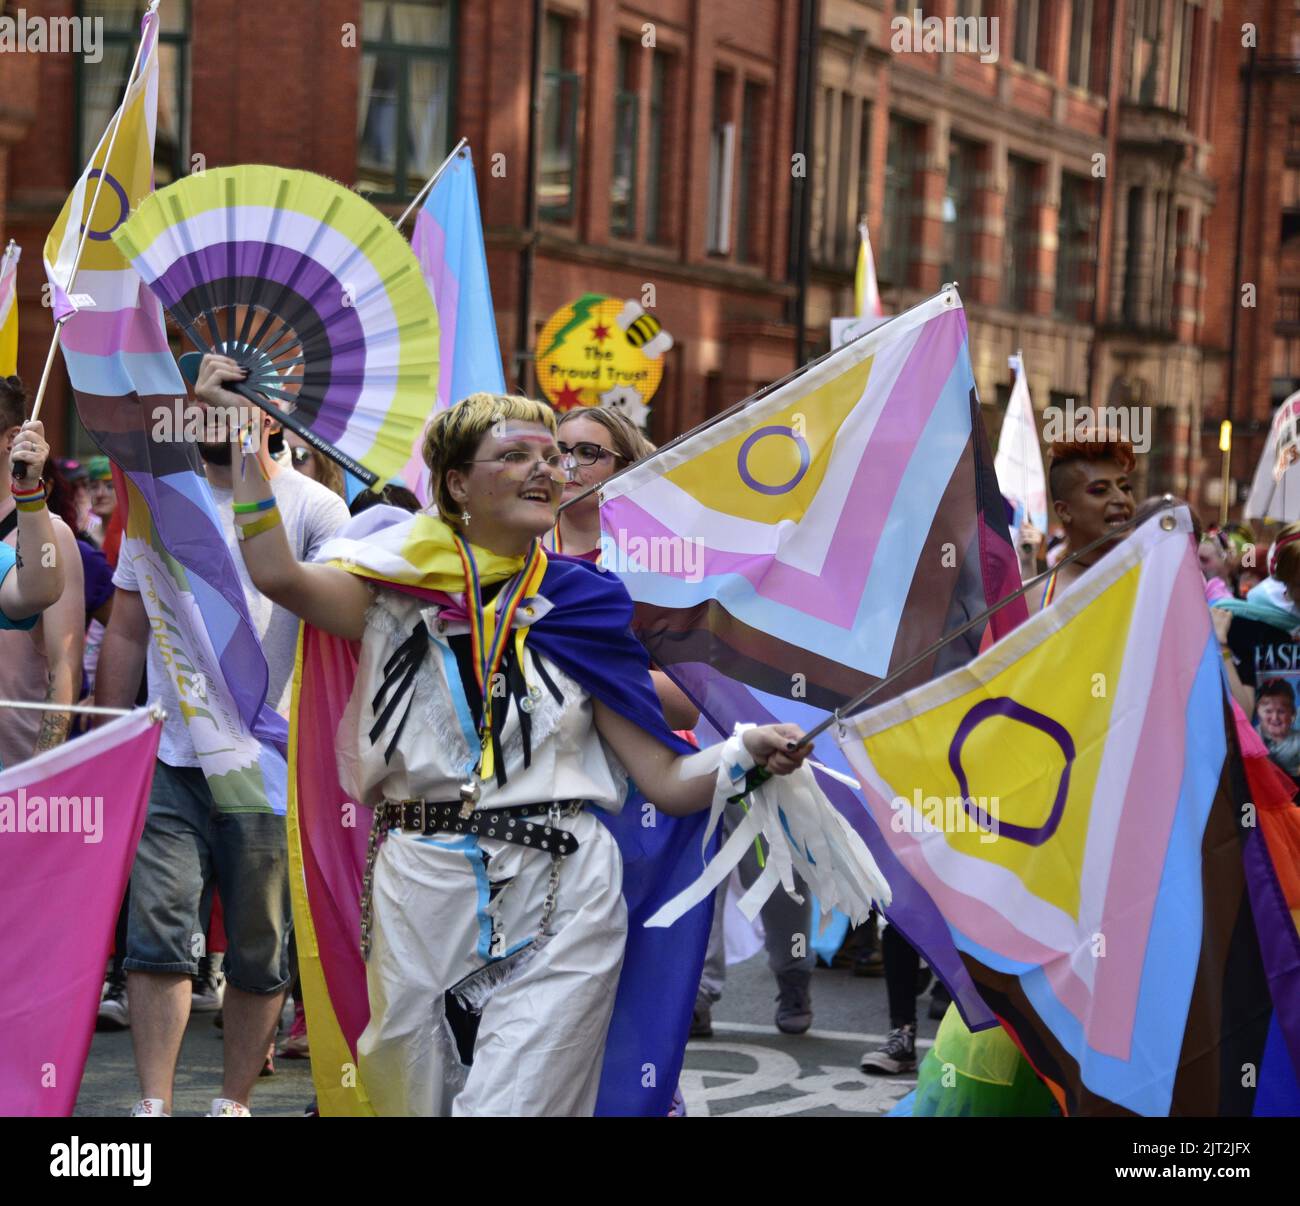 Manchester, Reino Unido. 27th de agosto de 2022. Los participantes participan en el desfile LGBTQ+ Pride Parade, en el centro de Manchester, Reino Unido, mientras LGBTQ+ Pride continúa durante el fin de semana festivo del 26th al 29th de agosto. Los organizadores dicen: 'Manchester Pride es una de las principales organizaciones benéficas LGBTQ+ del Reino Unido. Nuestra visión es un mundo donde las personas LGBTQ+ son libres de vivir y amar sin prejuicio. Somos parte de un movimiento mundial del Orgullo que celebra la igualdad LGBTQ+ y desafía la discriminación.' Crédito: Terry Waller/Alamy Live News Foto de stock